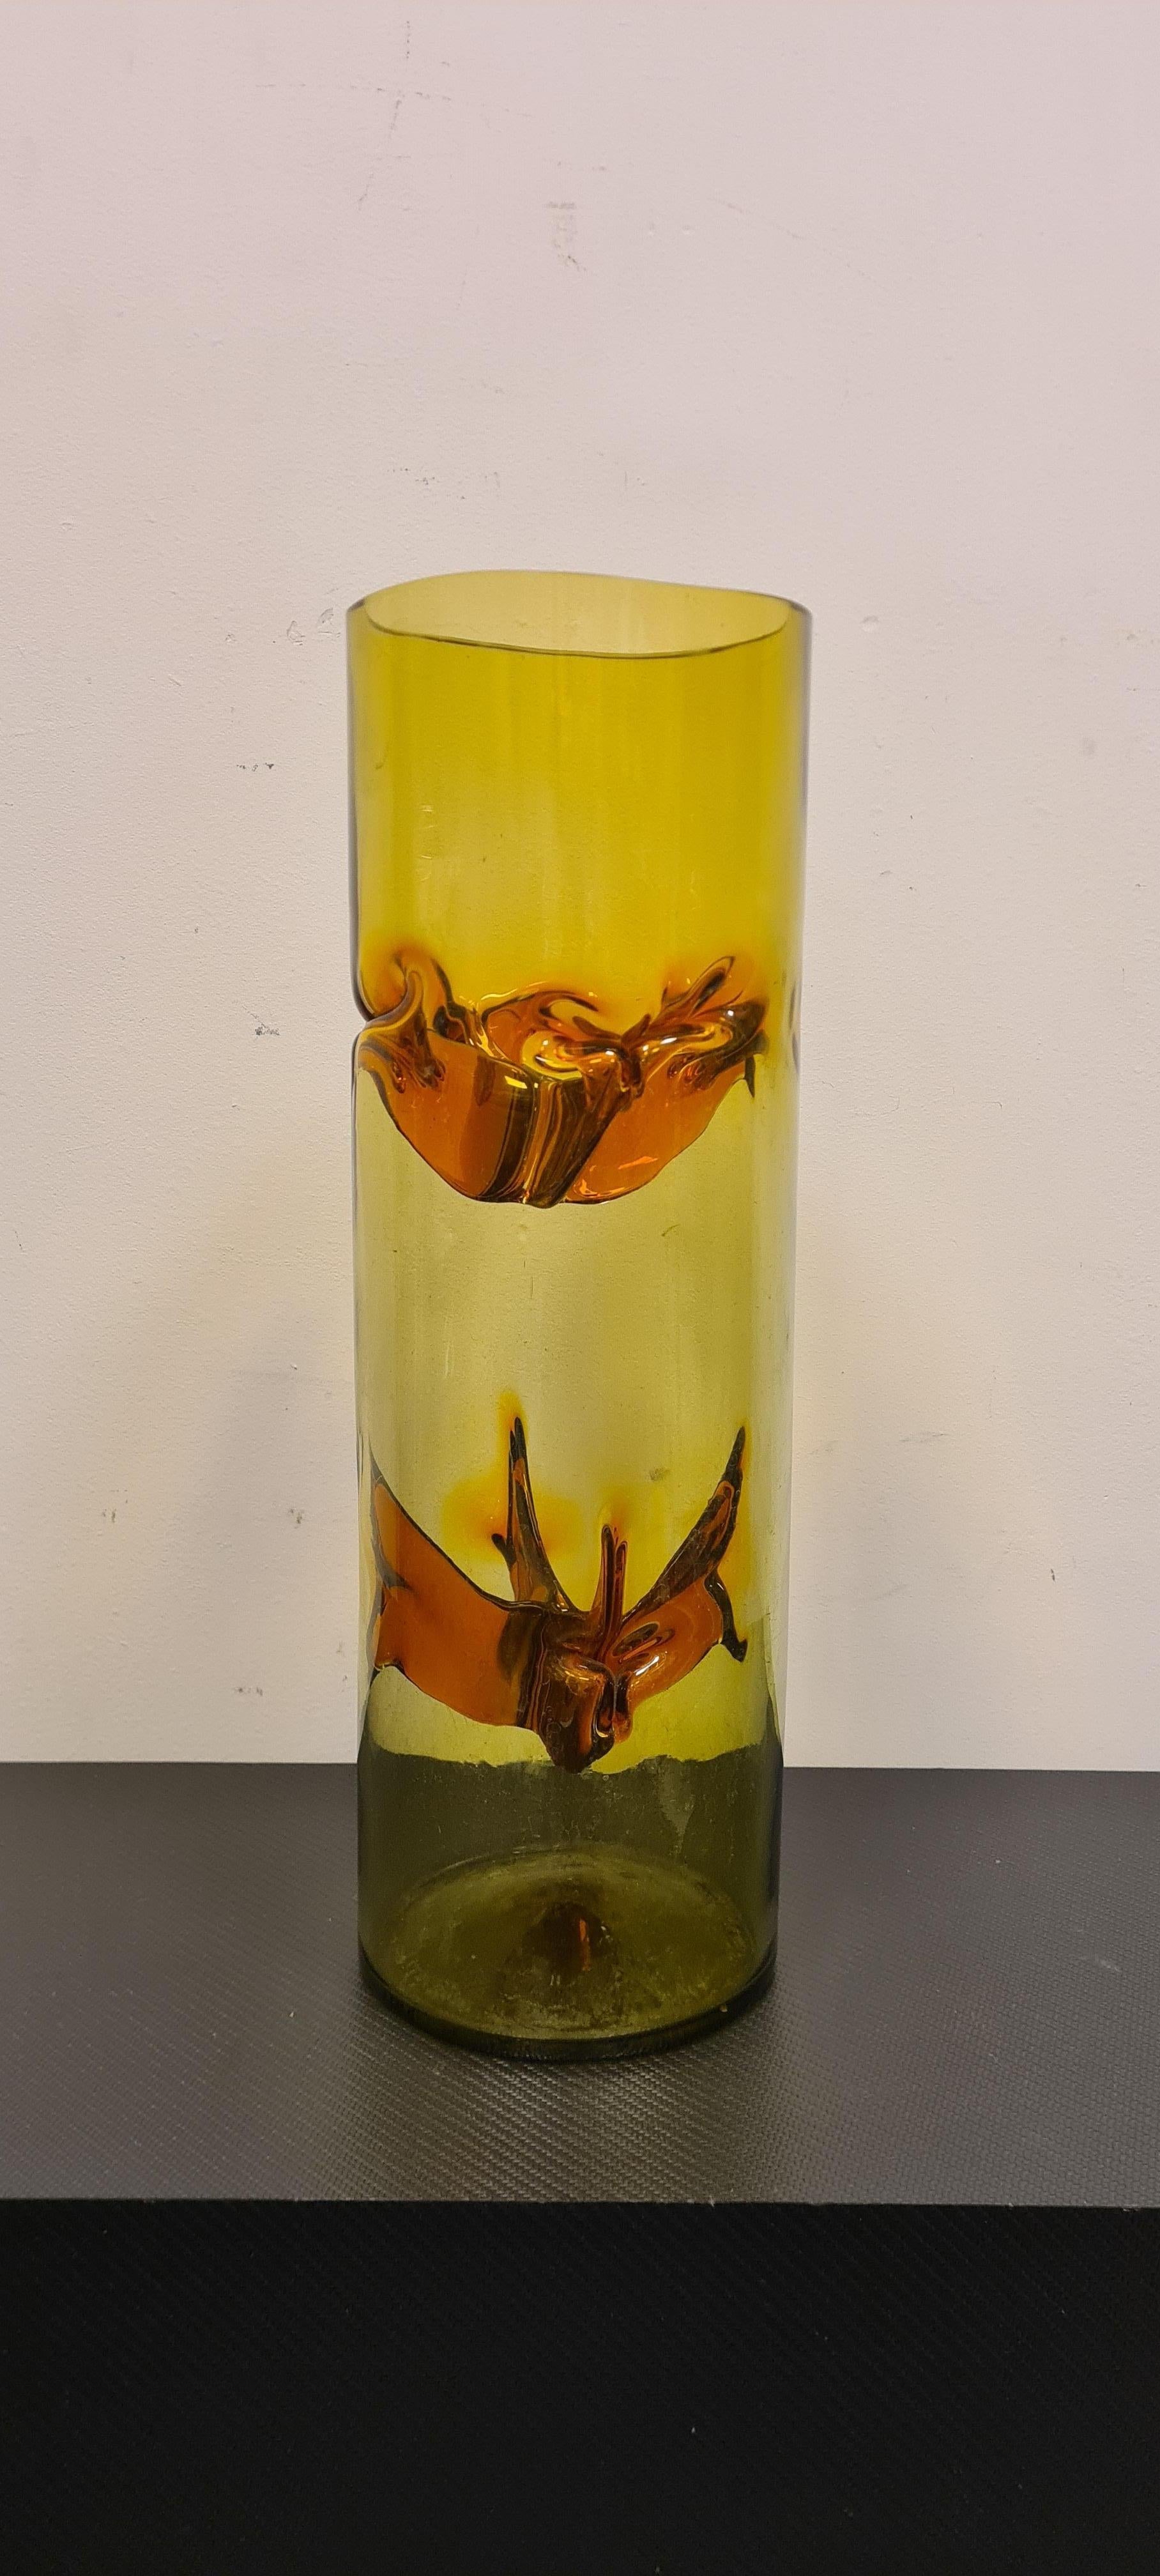 Vase Talea de la série Membrane de Toni Zuccheri pour VeArt.

Élégant vase cylindrique en verre soufflé de Murano avec applications polychromes.

La partie cylindrique a des teintes jaunes données par les applications internes ambrées.

Raffiné et